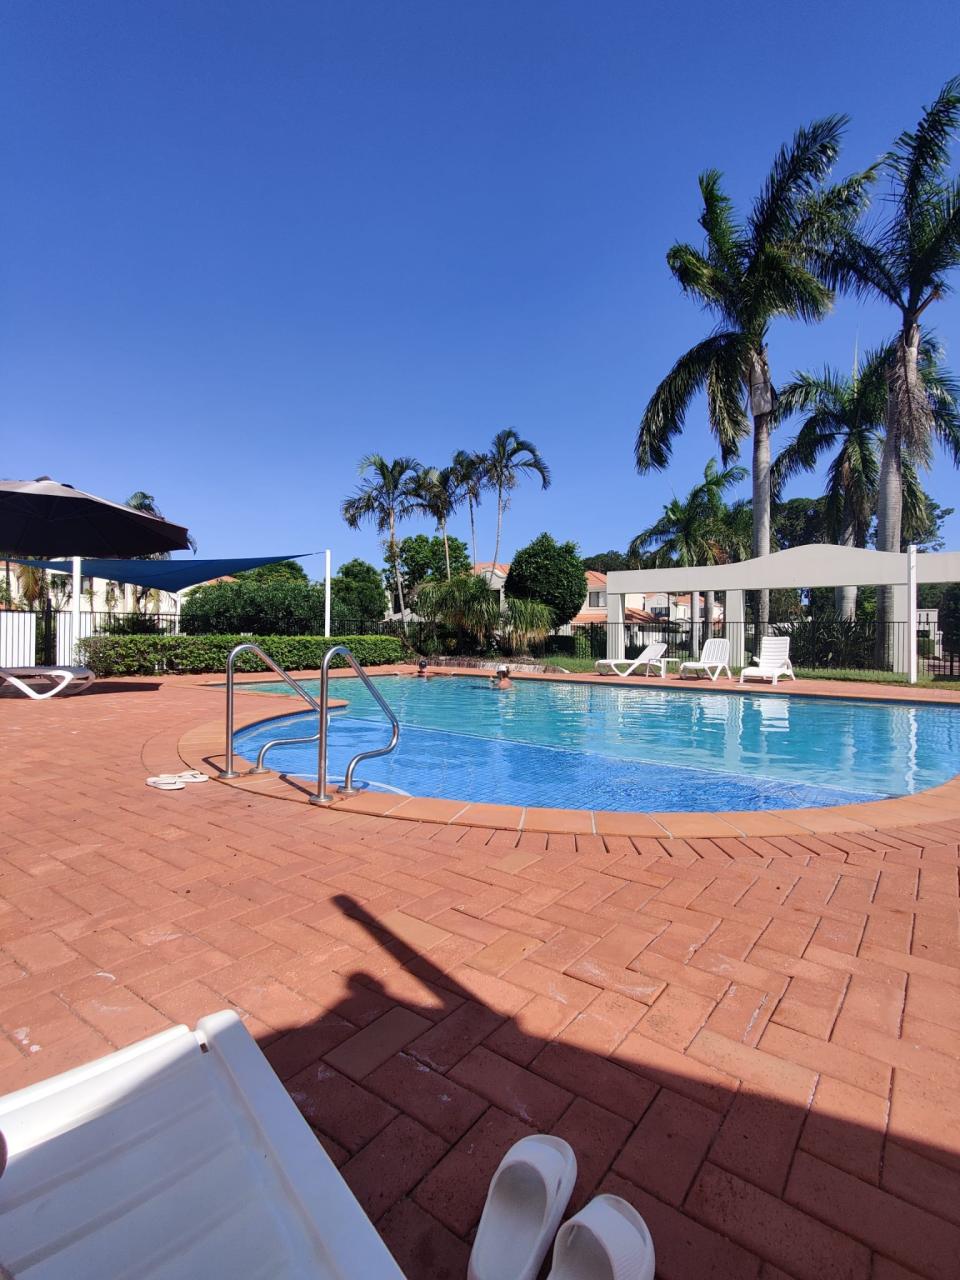 Ferlitas Wohnkomplex in Queensland verfügt über einen eigenen Pool. - Copyright: Gabriella Ferlita